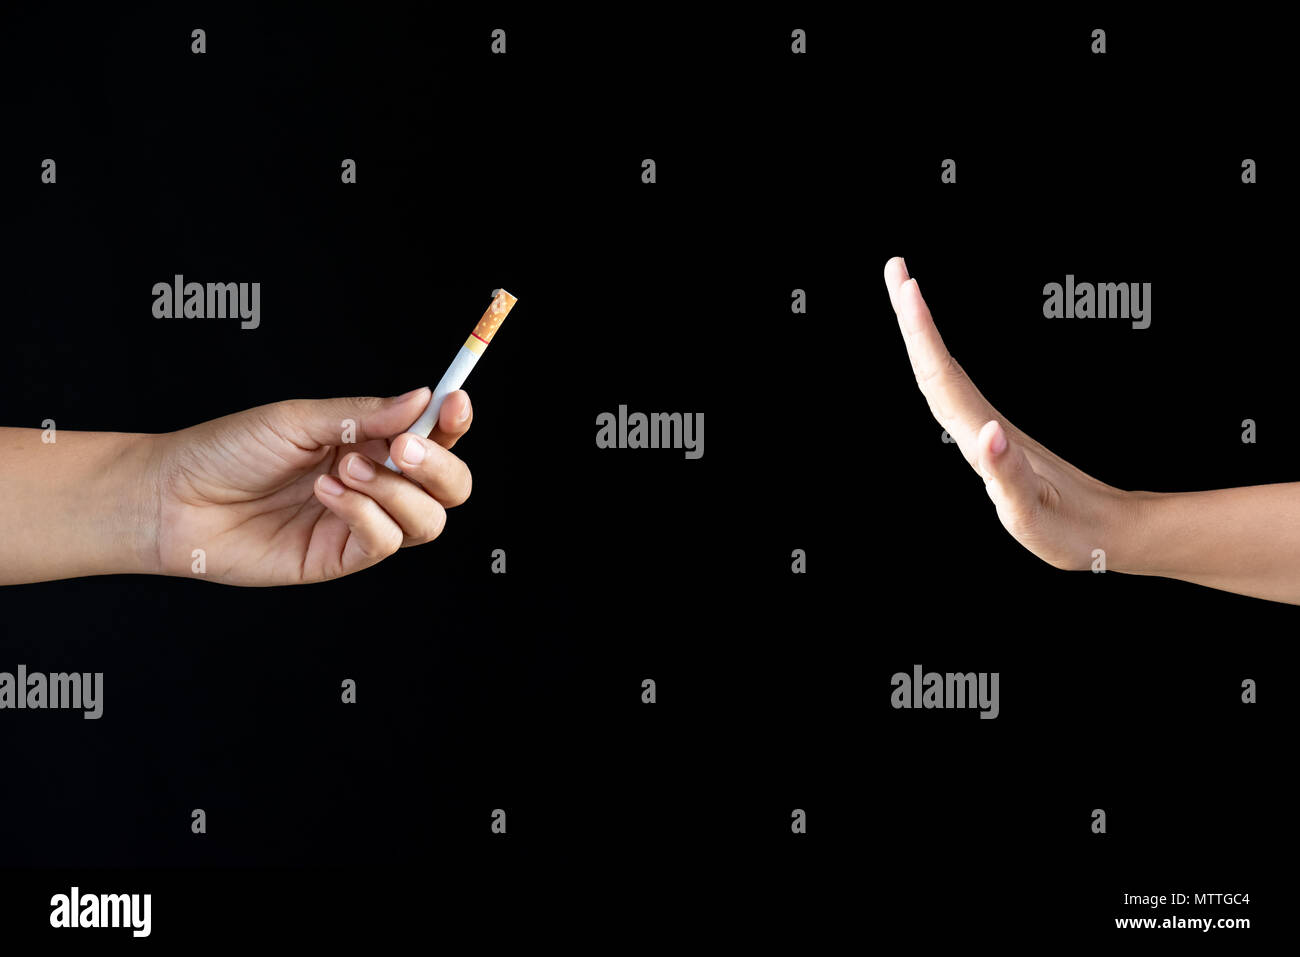 Weltnichtrauchertag, dem 31. Mai. Sagen Sie einfach nein zu Rauchen aufhören. Nahaufnahme der Hand ablehnen Zigarette bieten auf schwarzem Hintergrund. Stockfoto